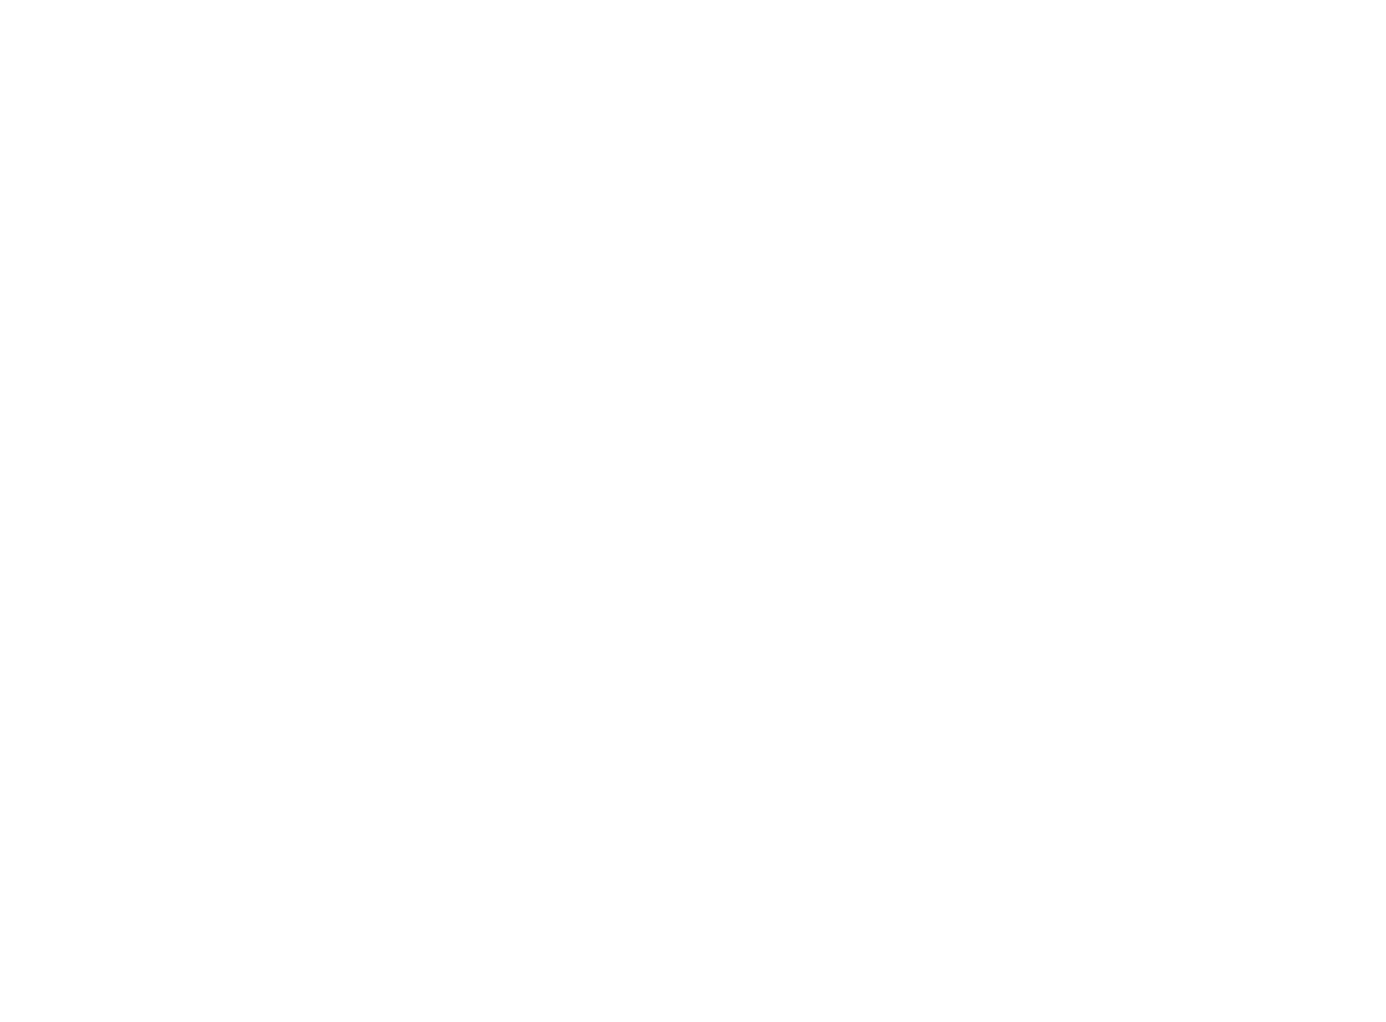 AI Leaders